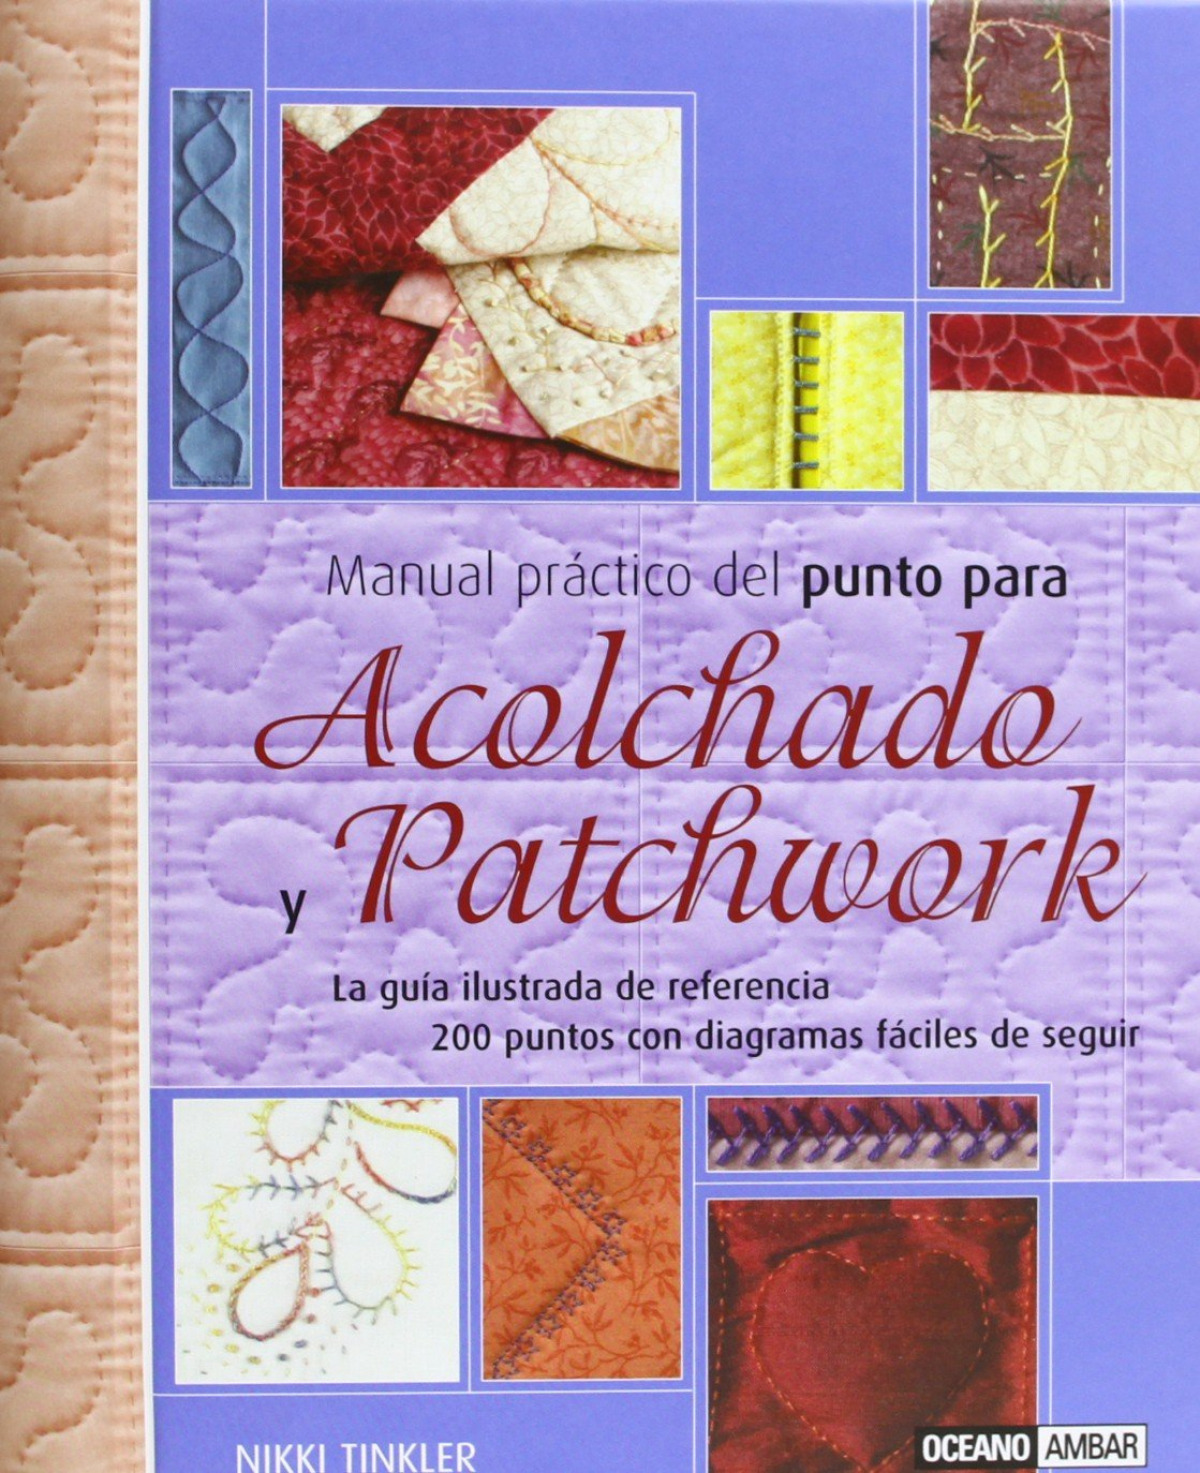 Manual práctico del punto para acolchado y patchwork - Tinkler, Nikki